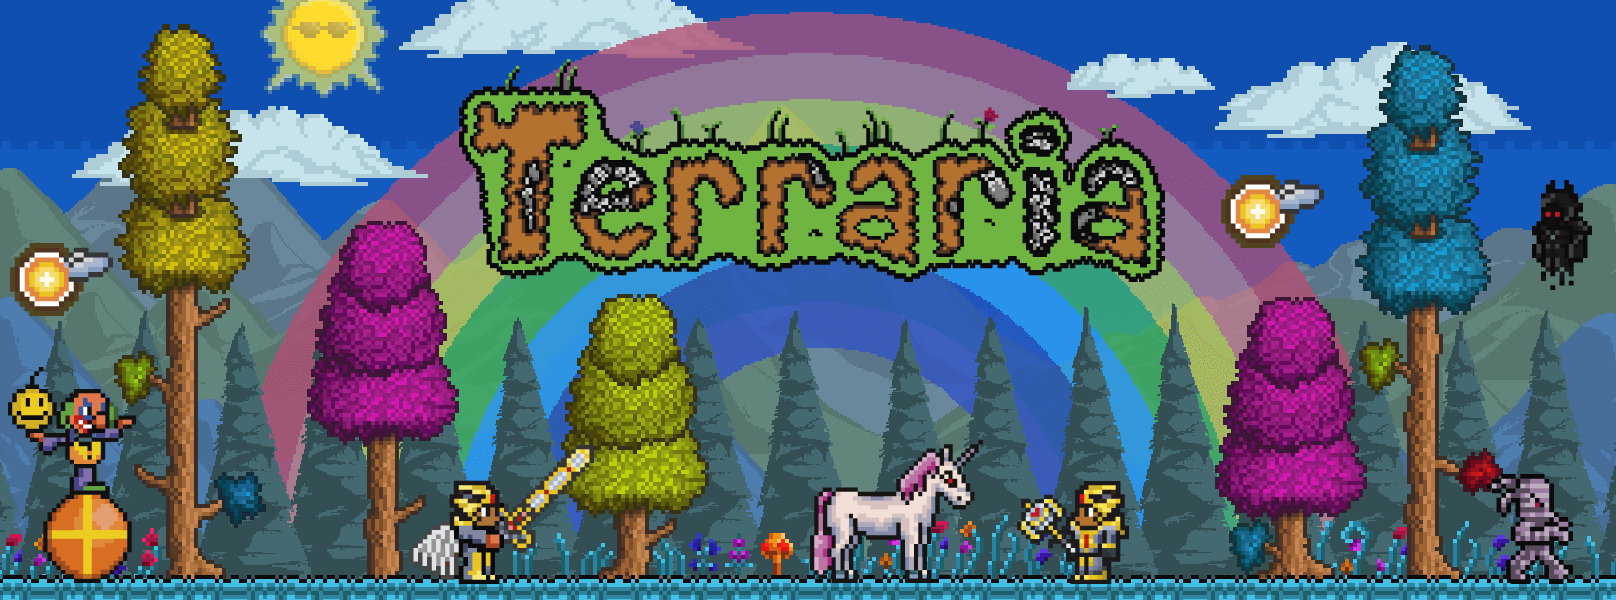 terraria map viewer 2017